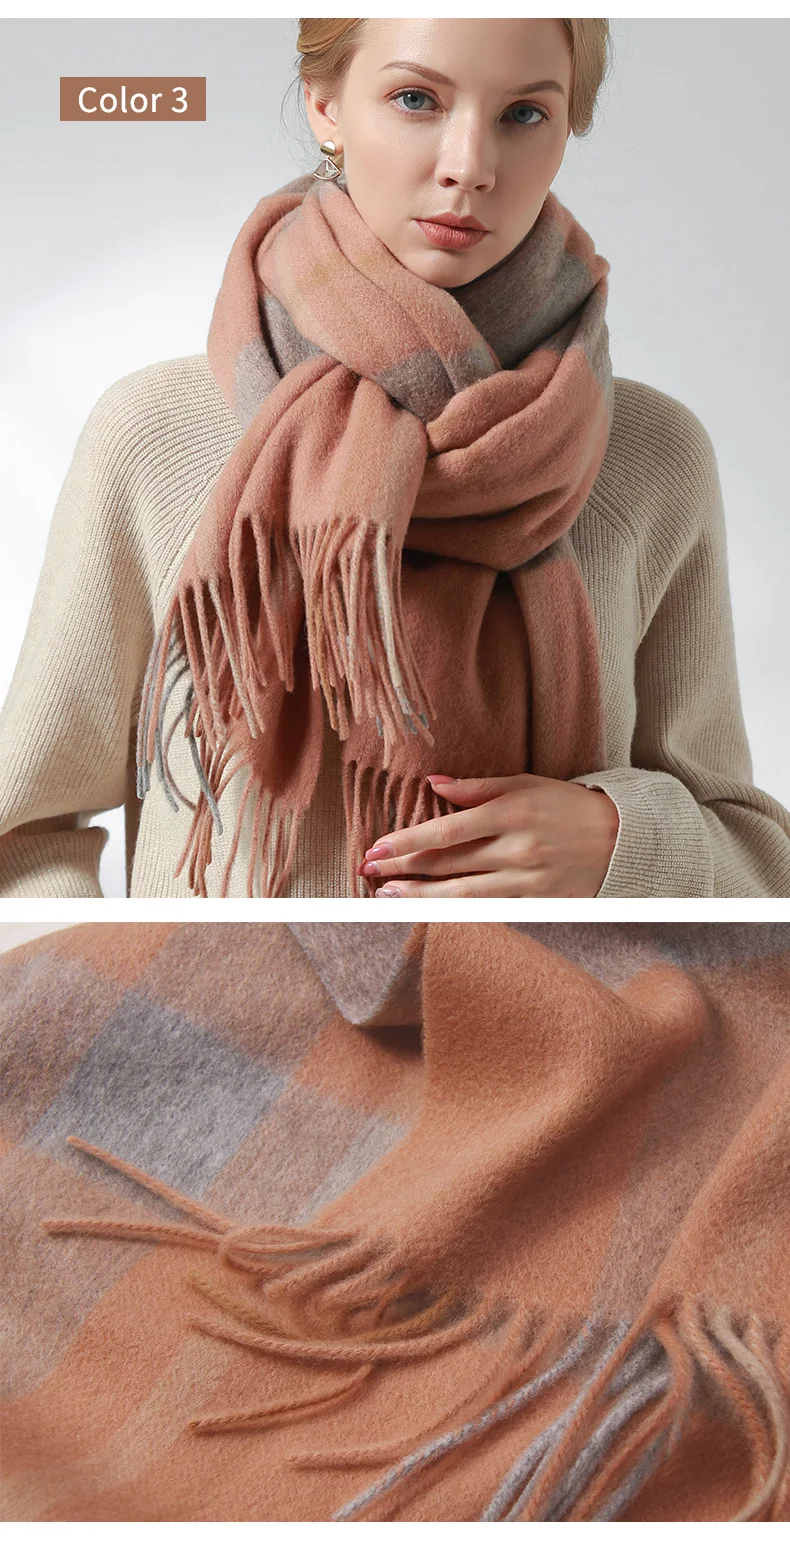 Зимний шарф из шерсти, женские плотные теплые шали и палантины, клетчатые шарфы из шерсти ягненка, кашемировые шарфы